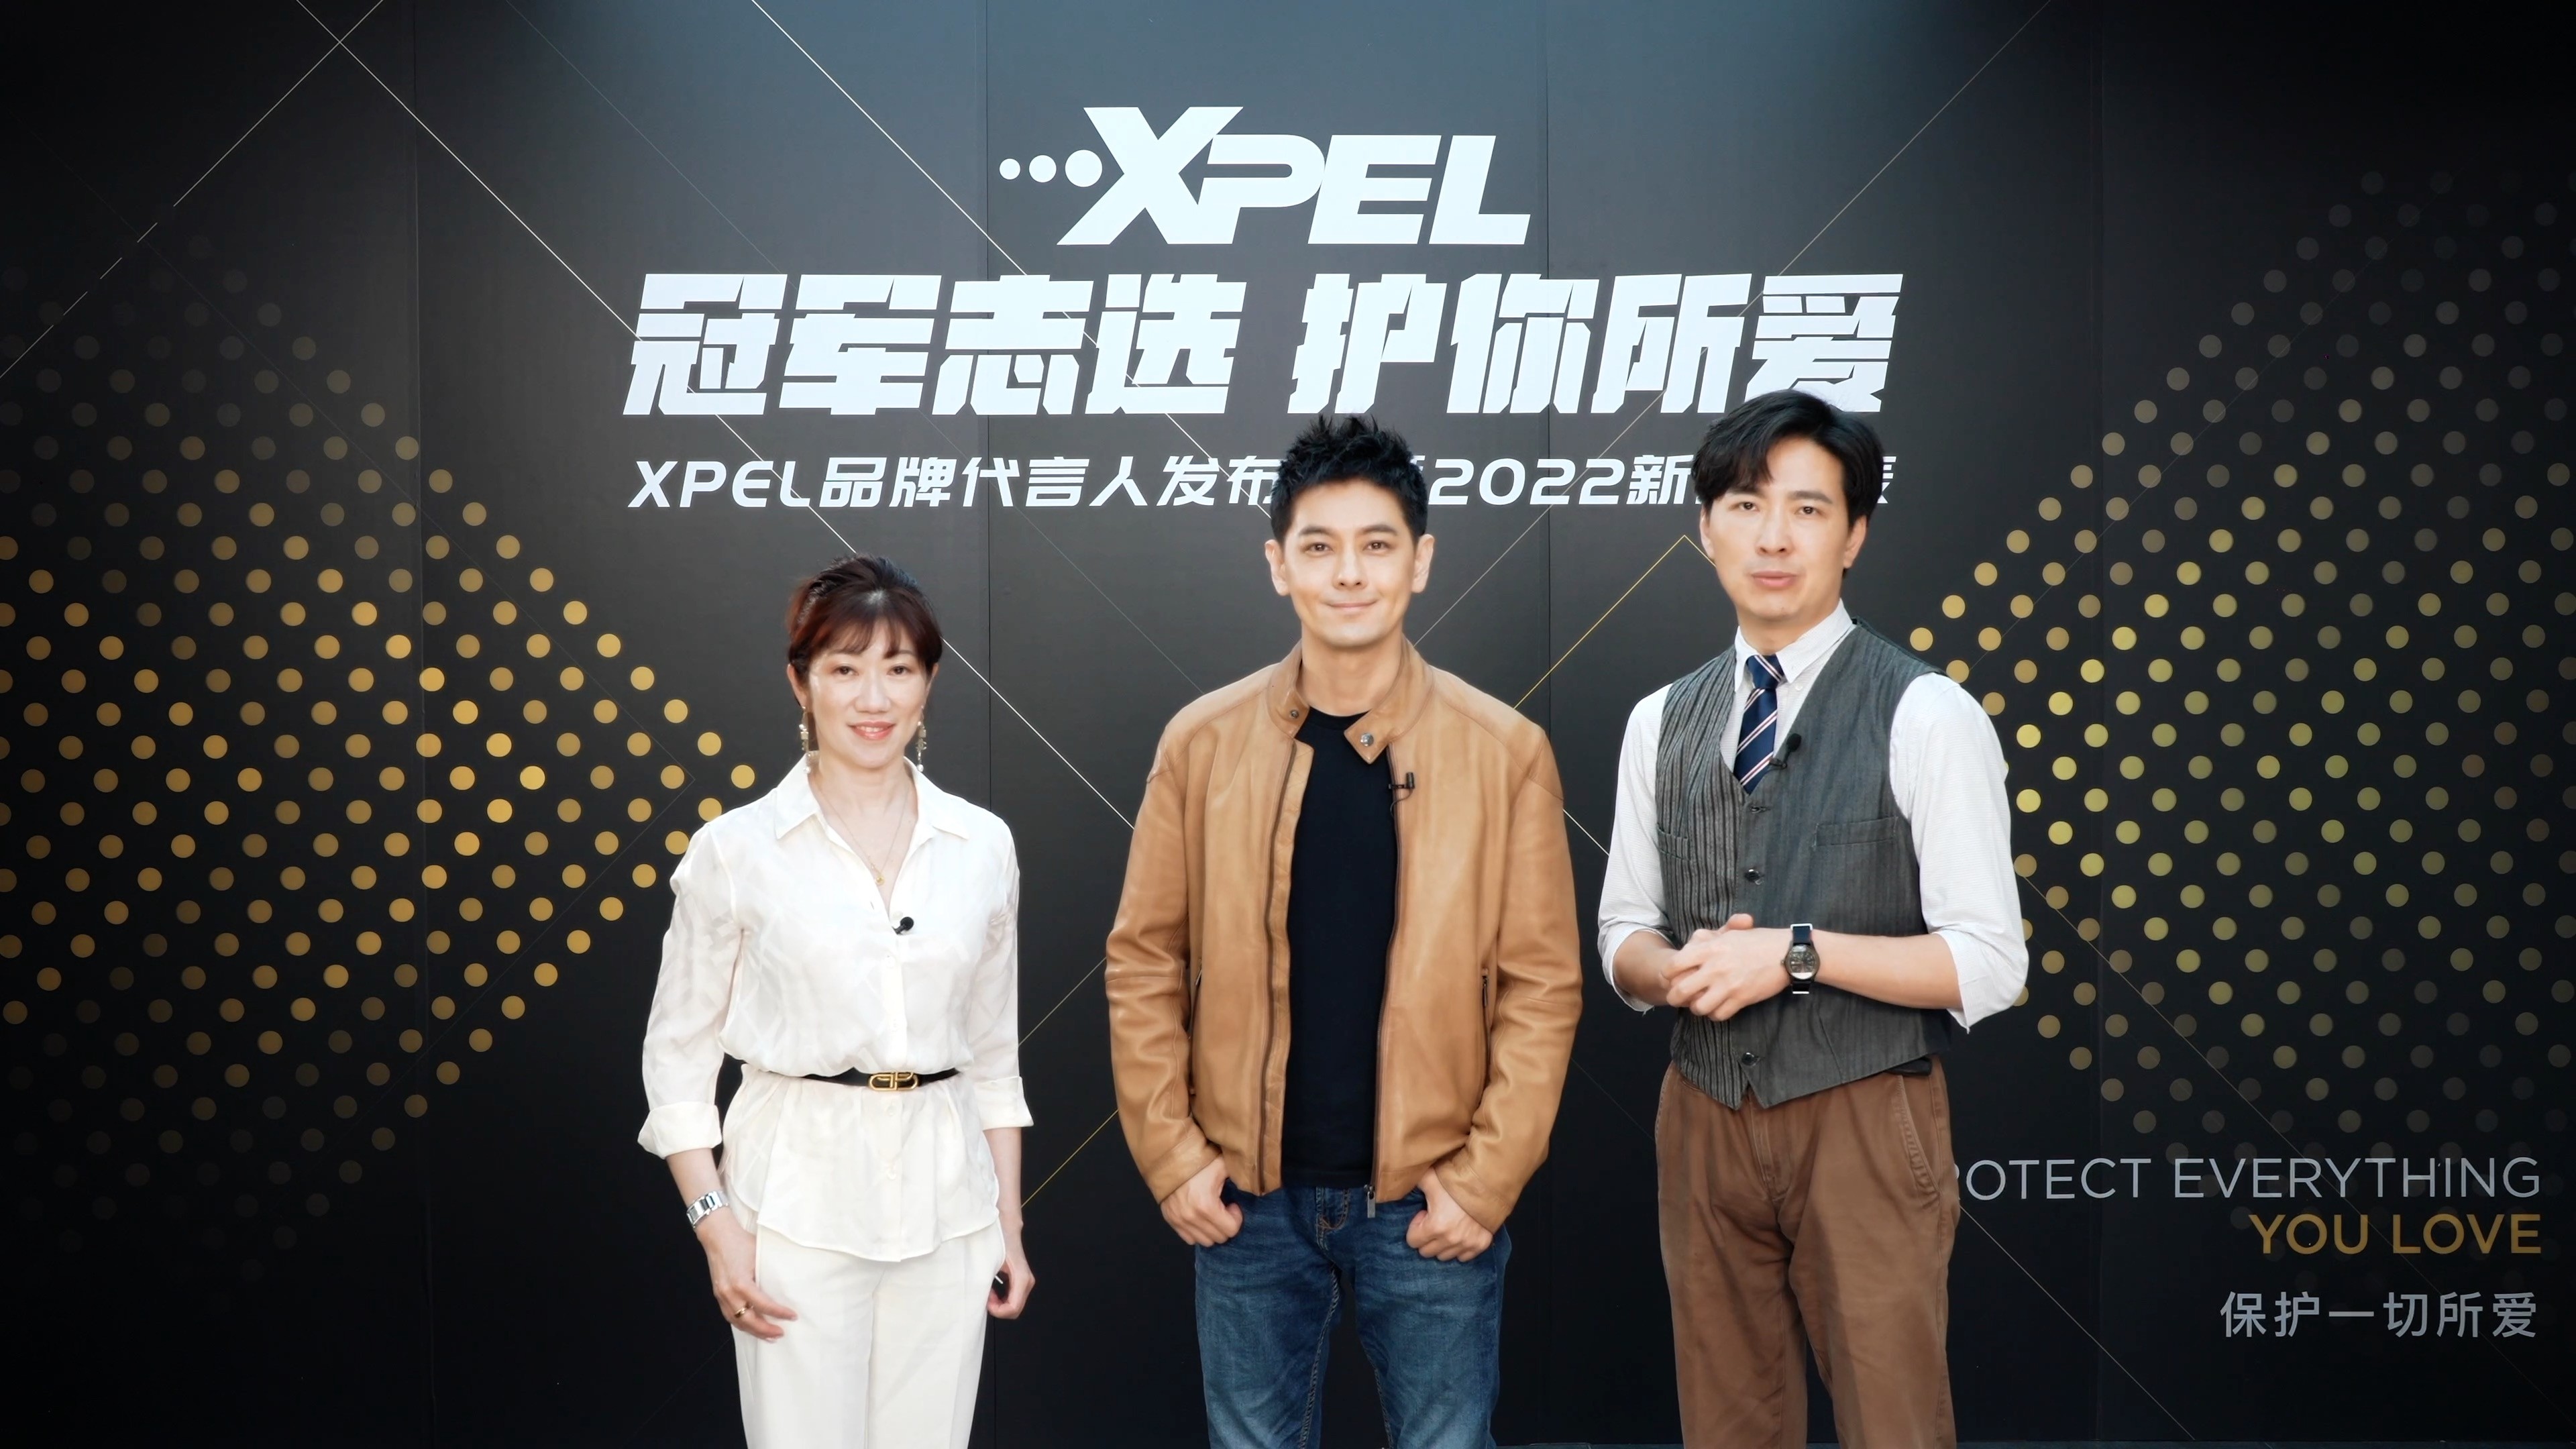 冠军志选，护你所爱！林志颖成为XPEL中国首位代言人